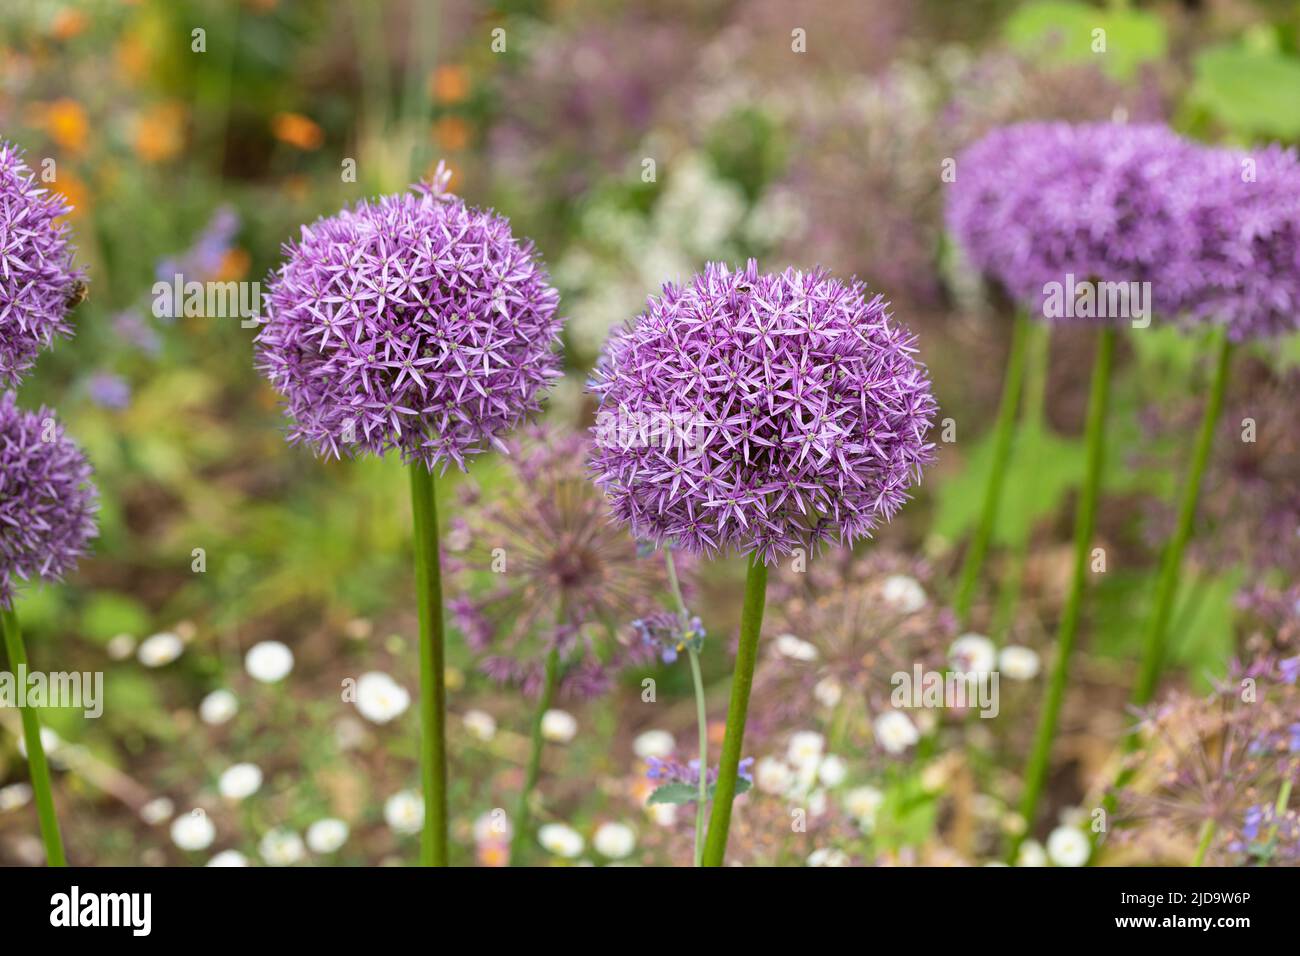 Jardin de la maison jardin fleuri bordure plantée avec des Alliums violets sur un fond flou. Angleterre, Royaume-Uni Banque D'Images